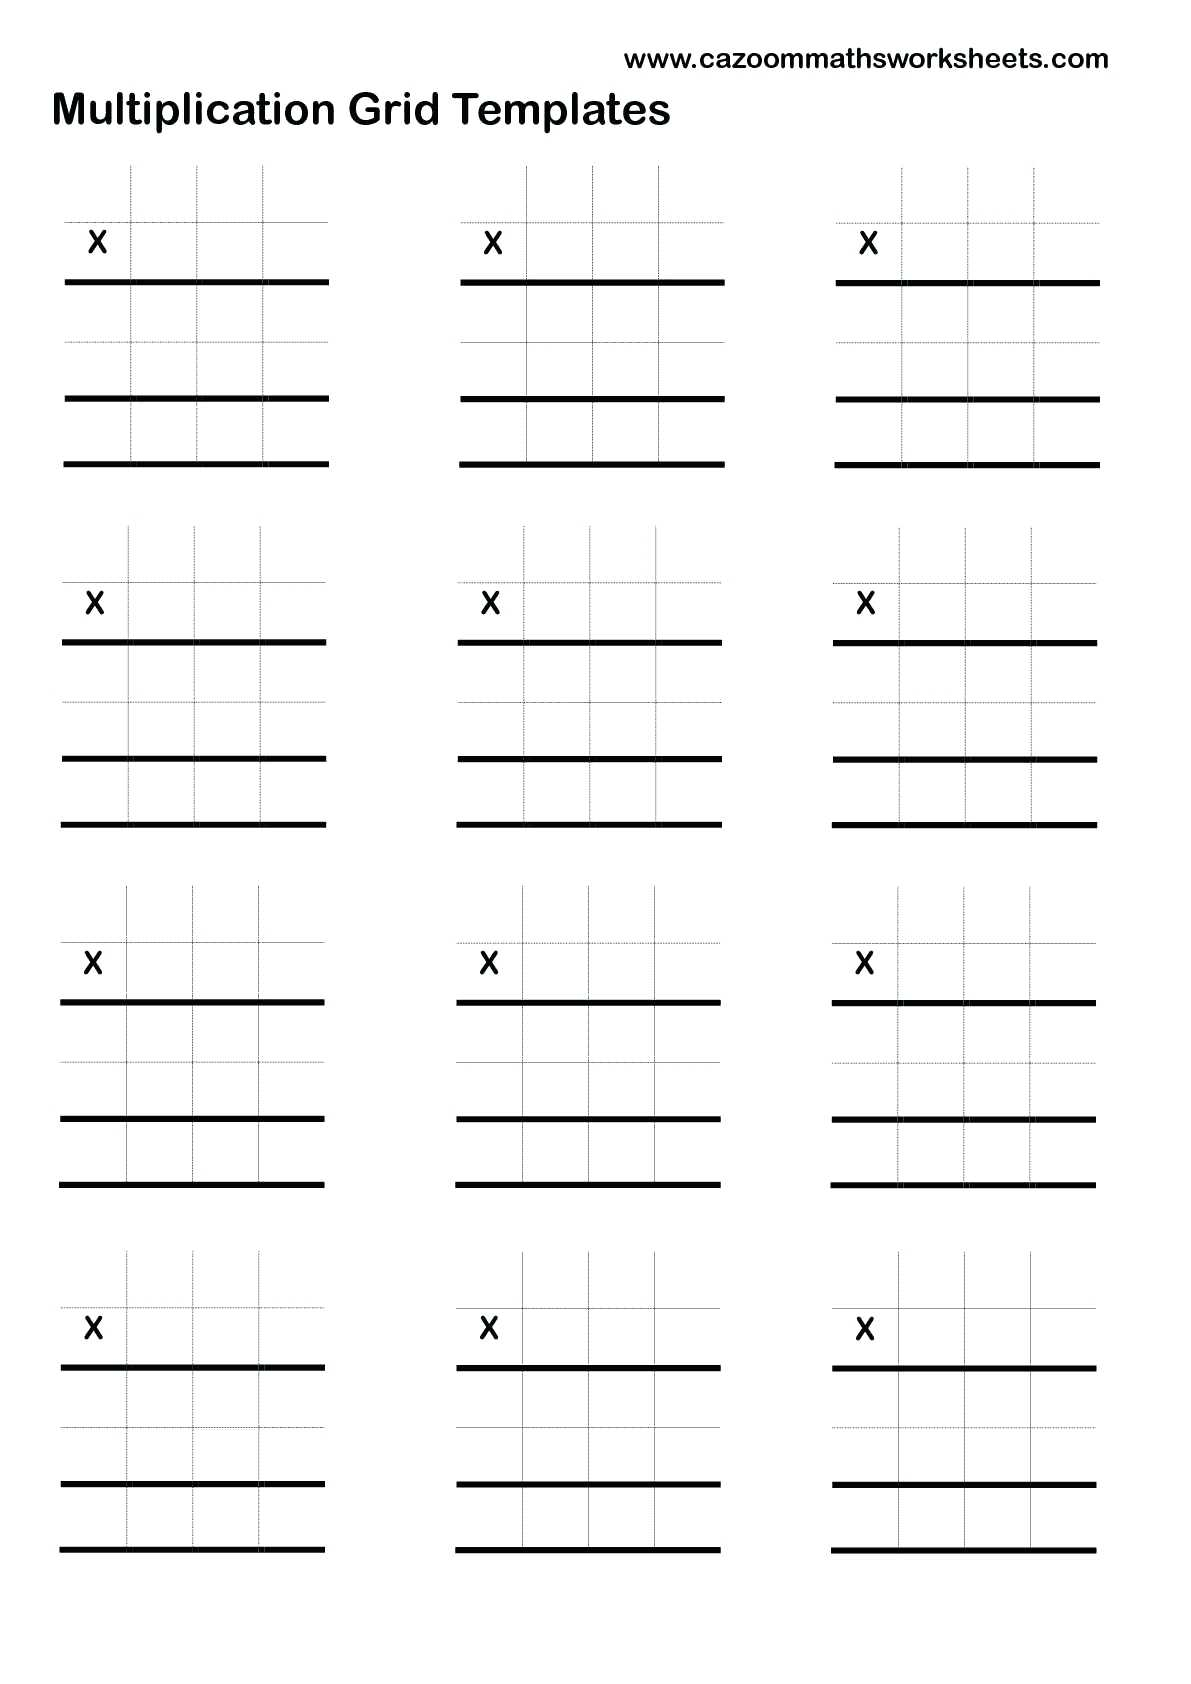 free-printable-lattice-multiplication-grids-printablemultiplication